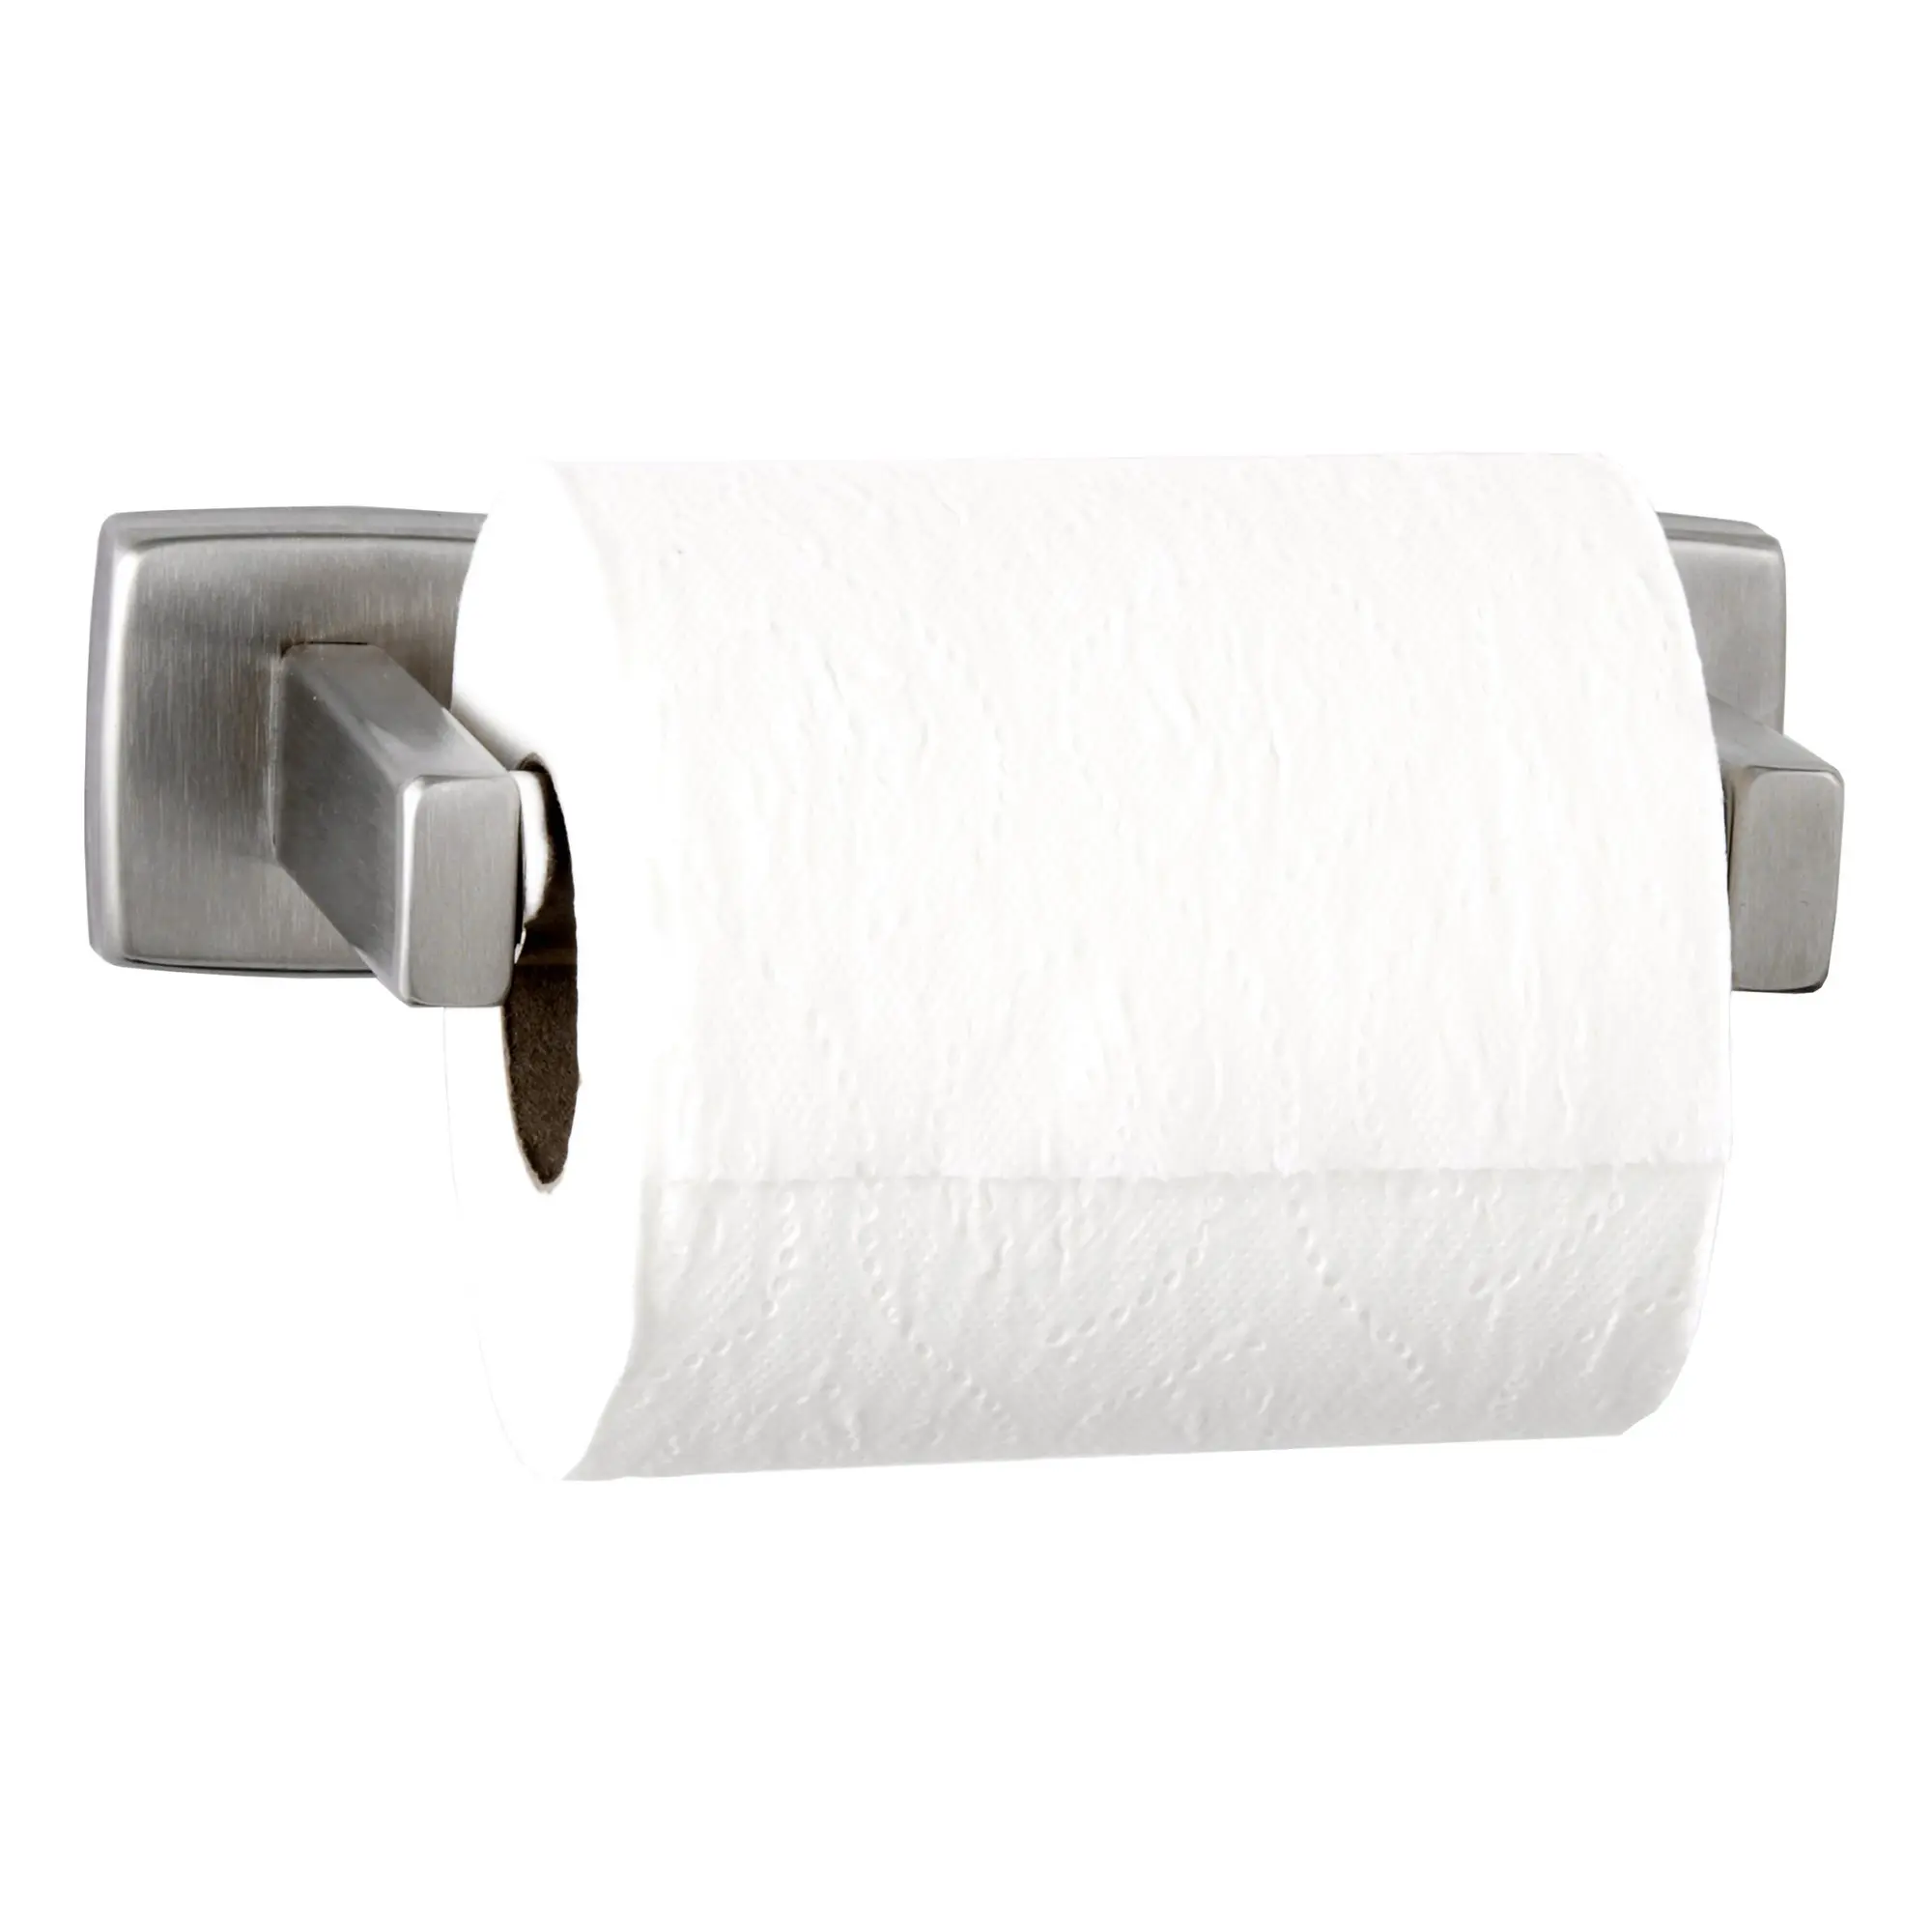 Bobrick B-685 Toilettenpapierrollenhalter für Einzelrolle